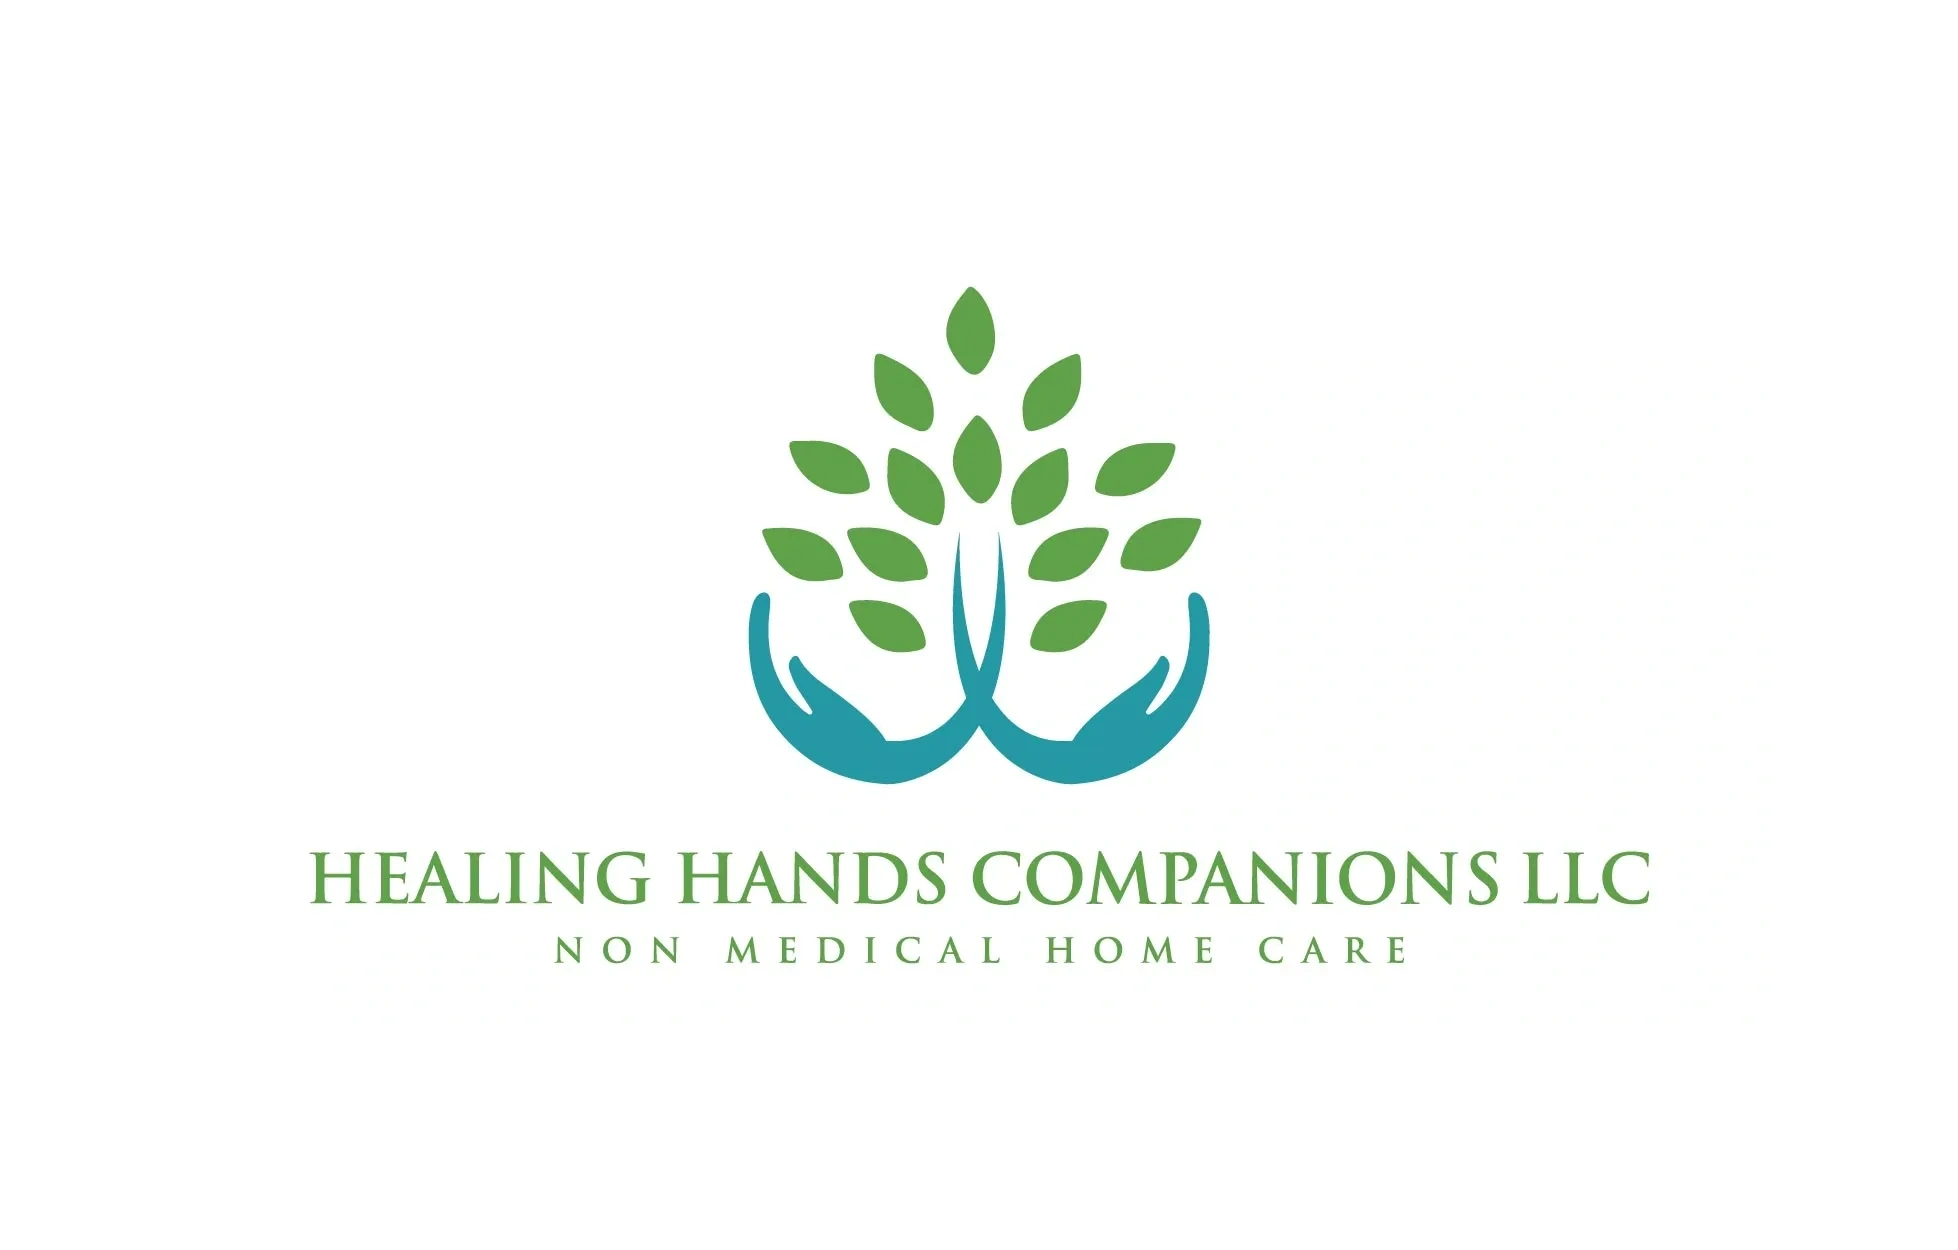 Healing Hands Healthcare, LLC